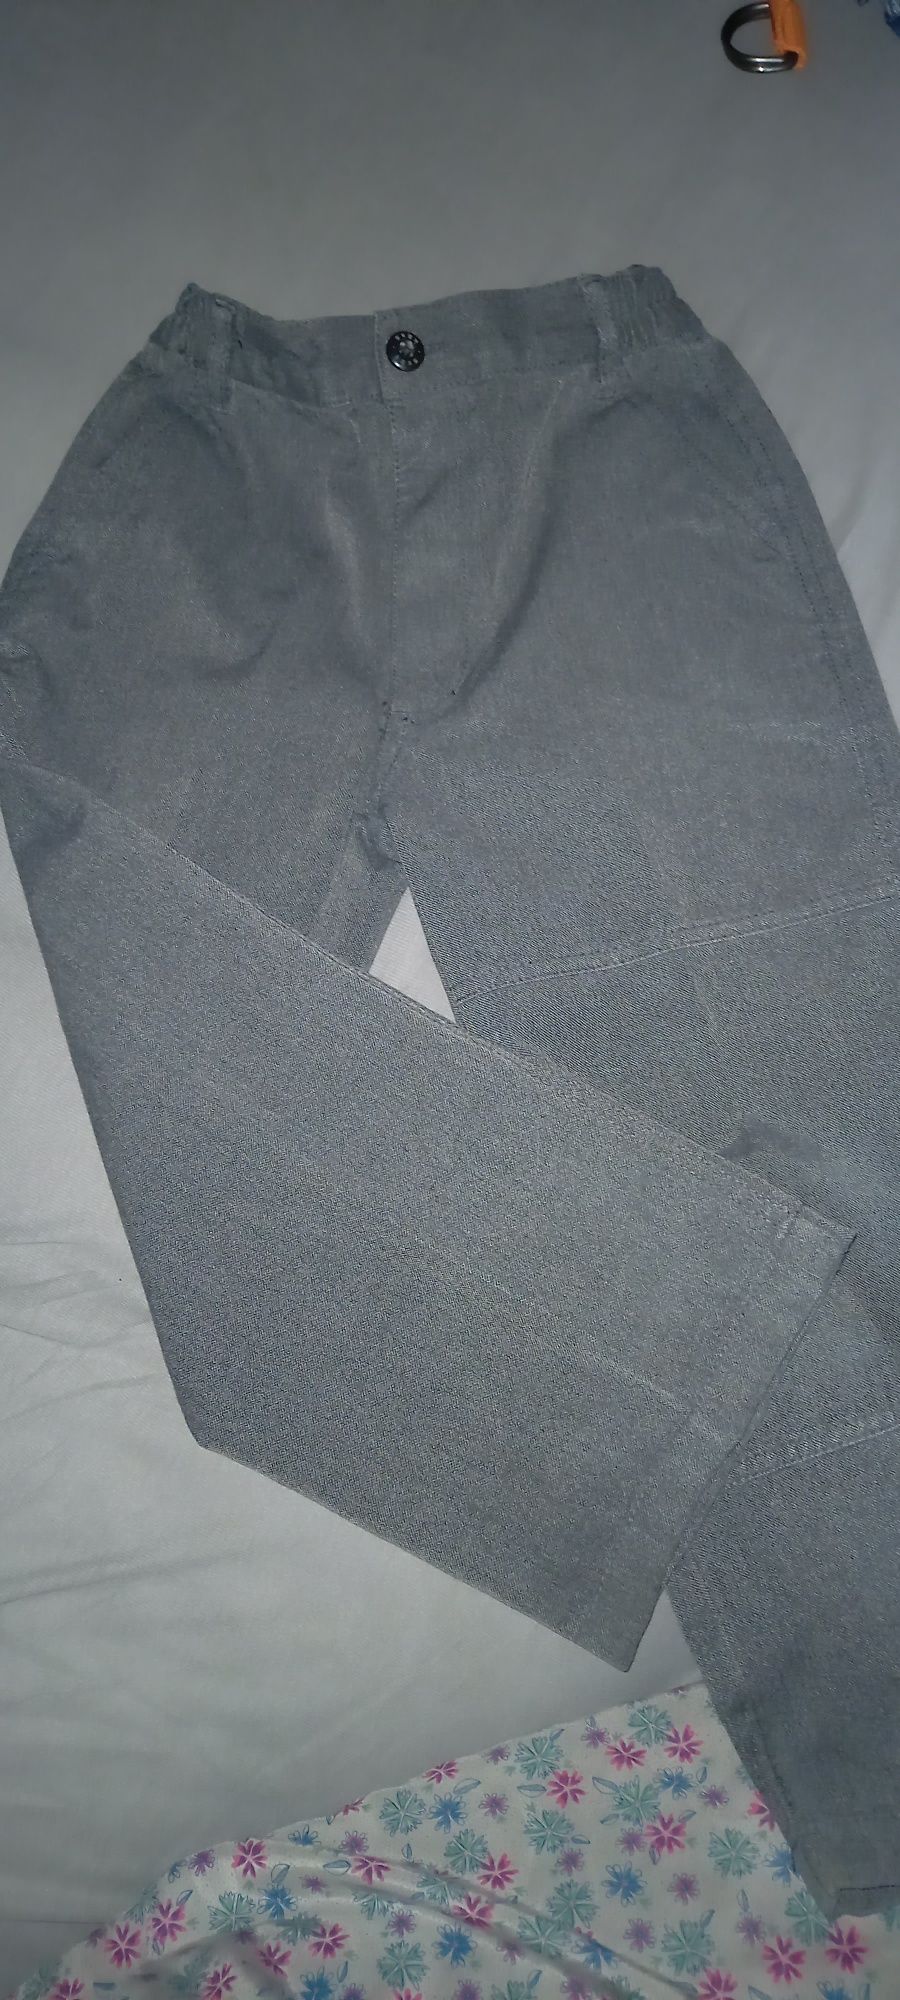 Szare spodnie chłopięce 110 cm, KAXS